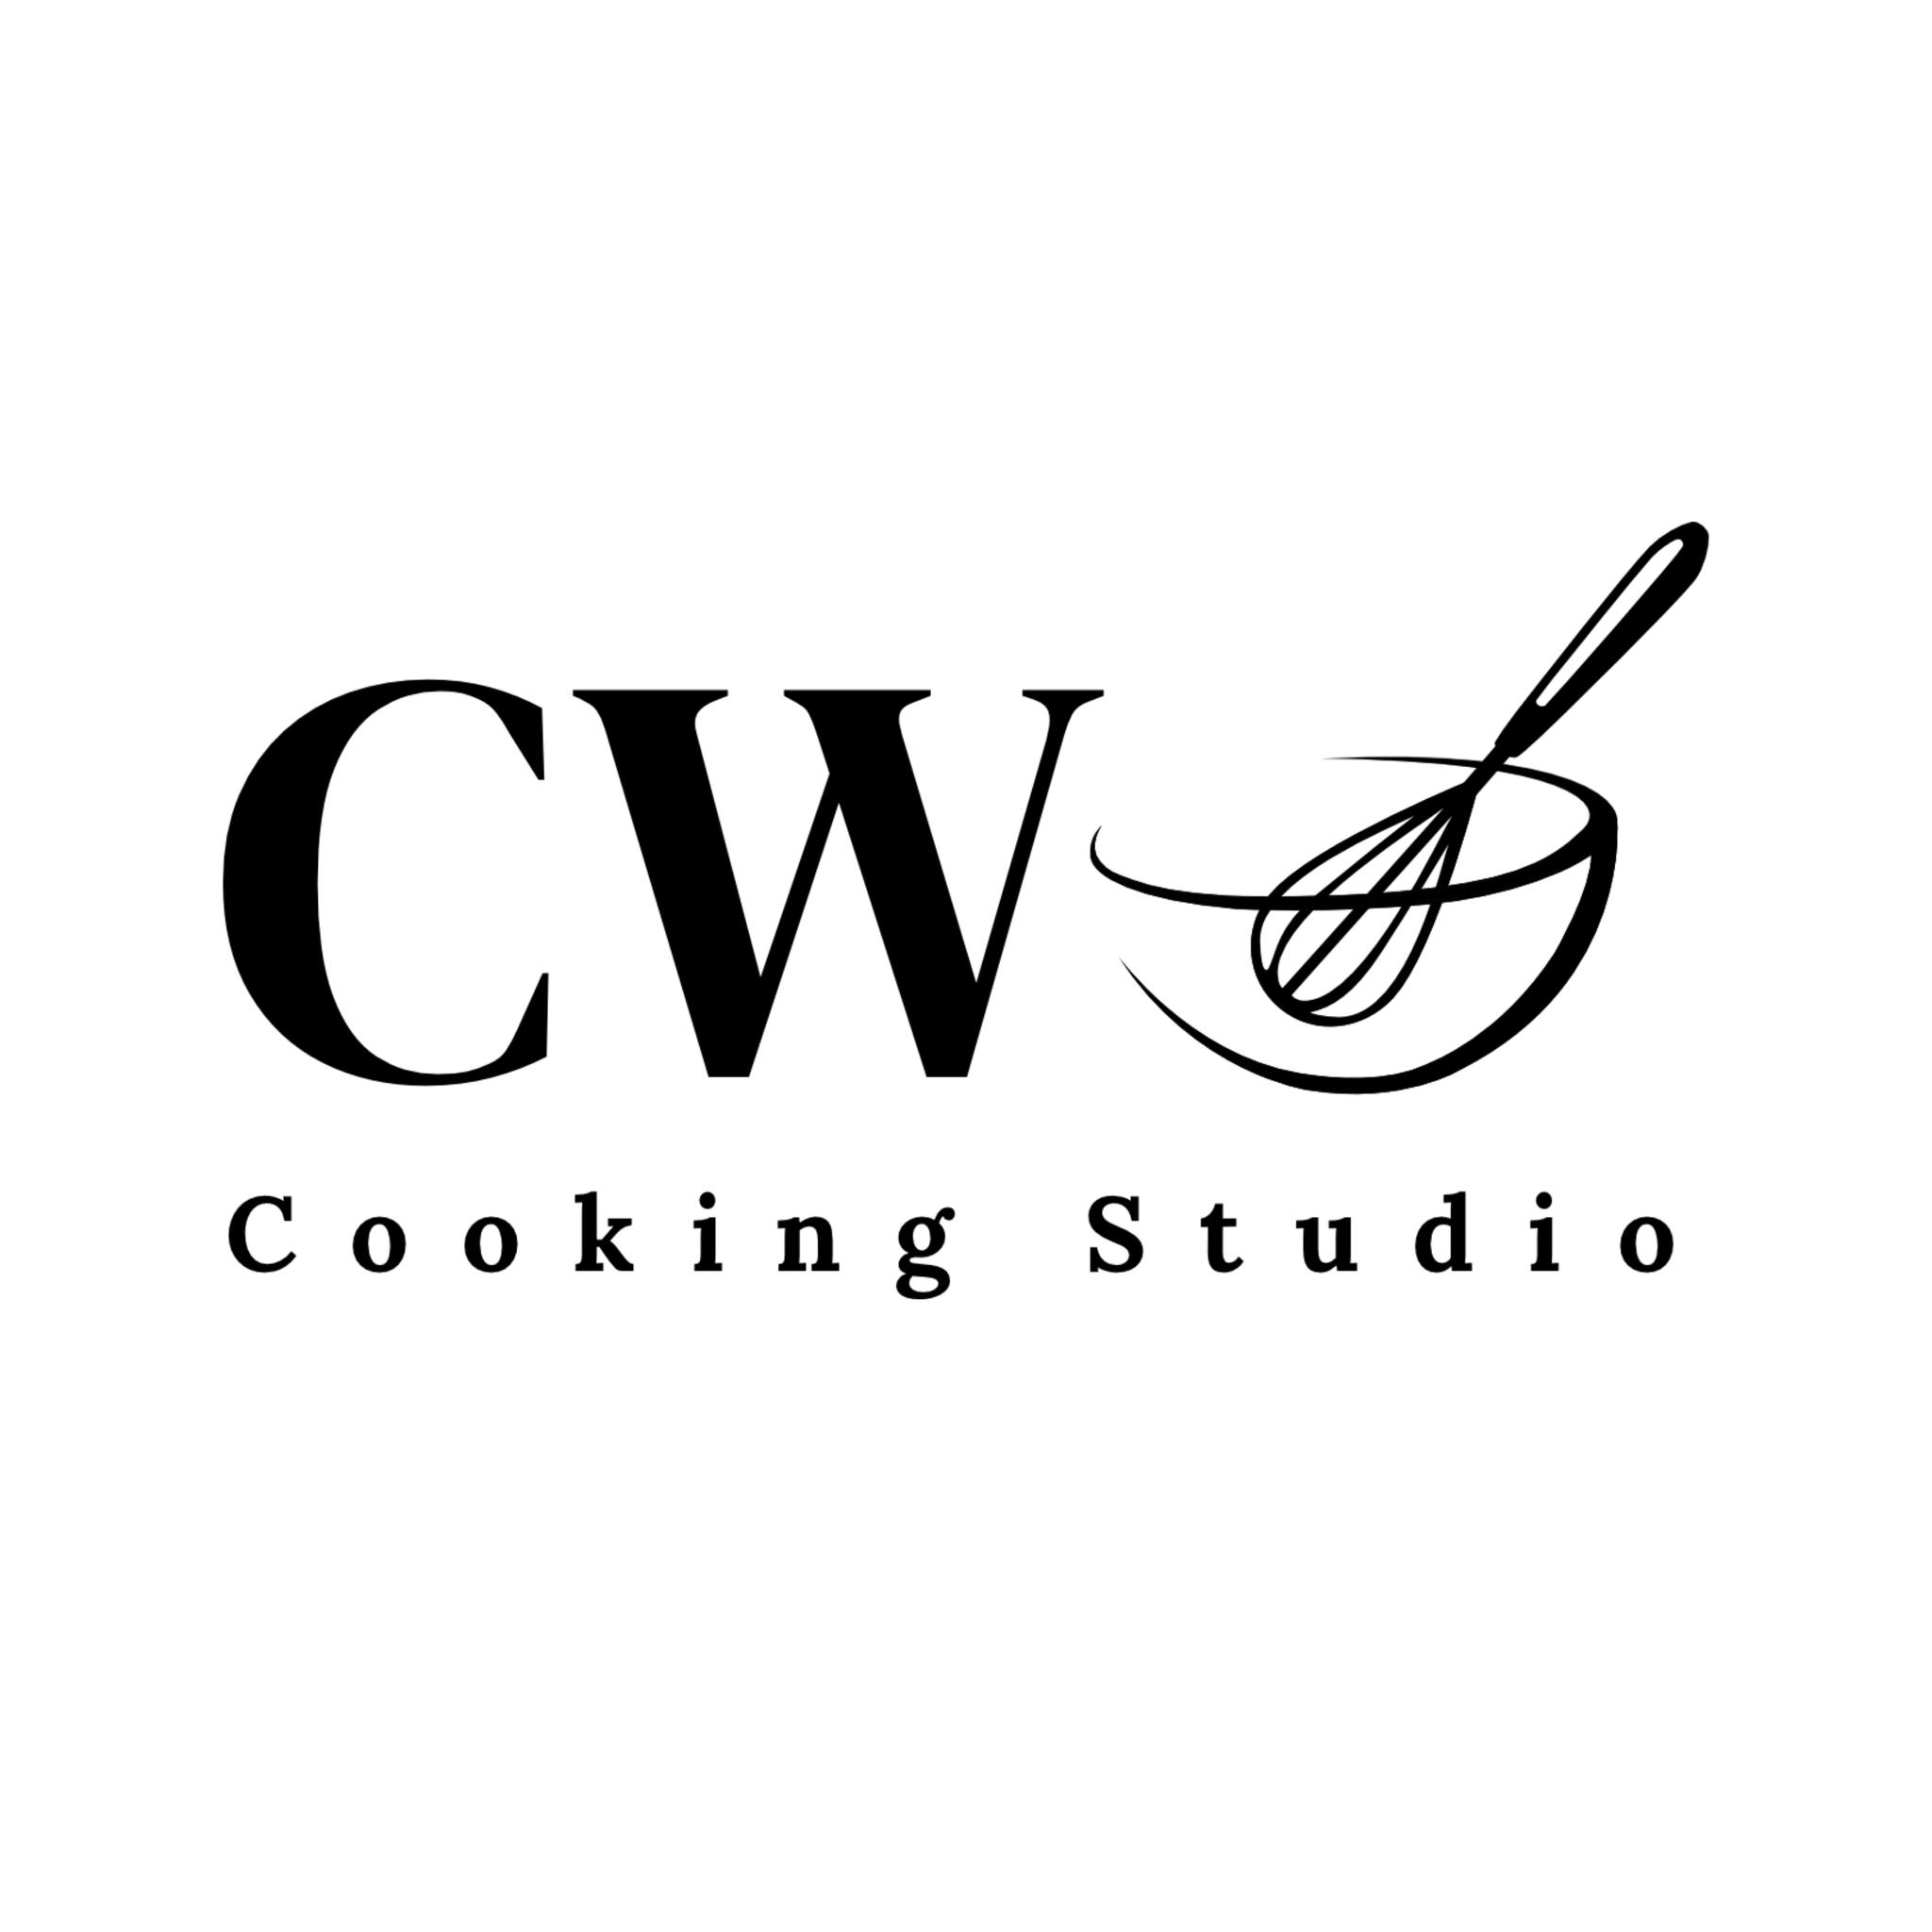 CW Cooking Studio Logo